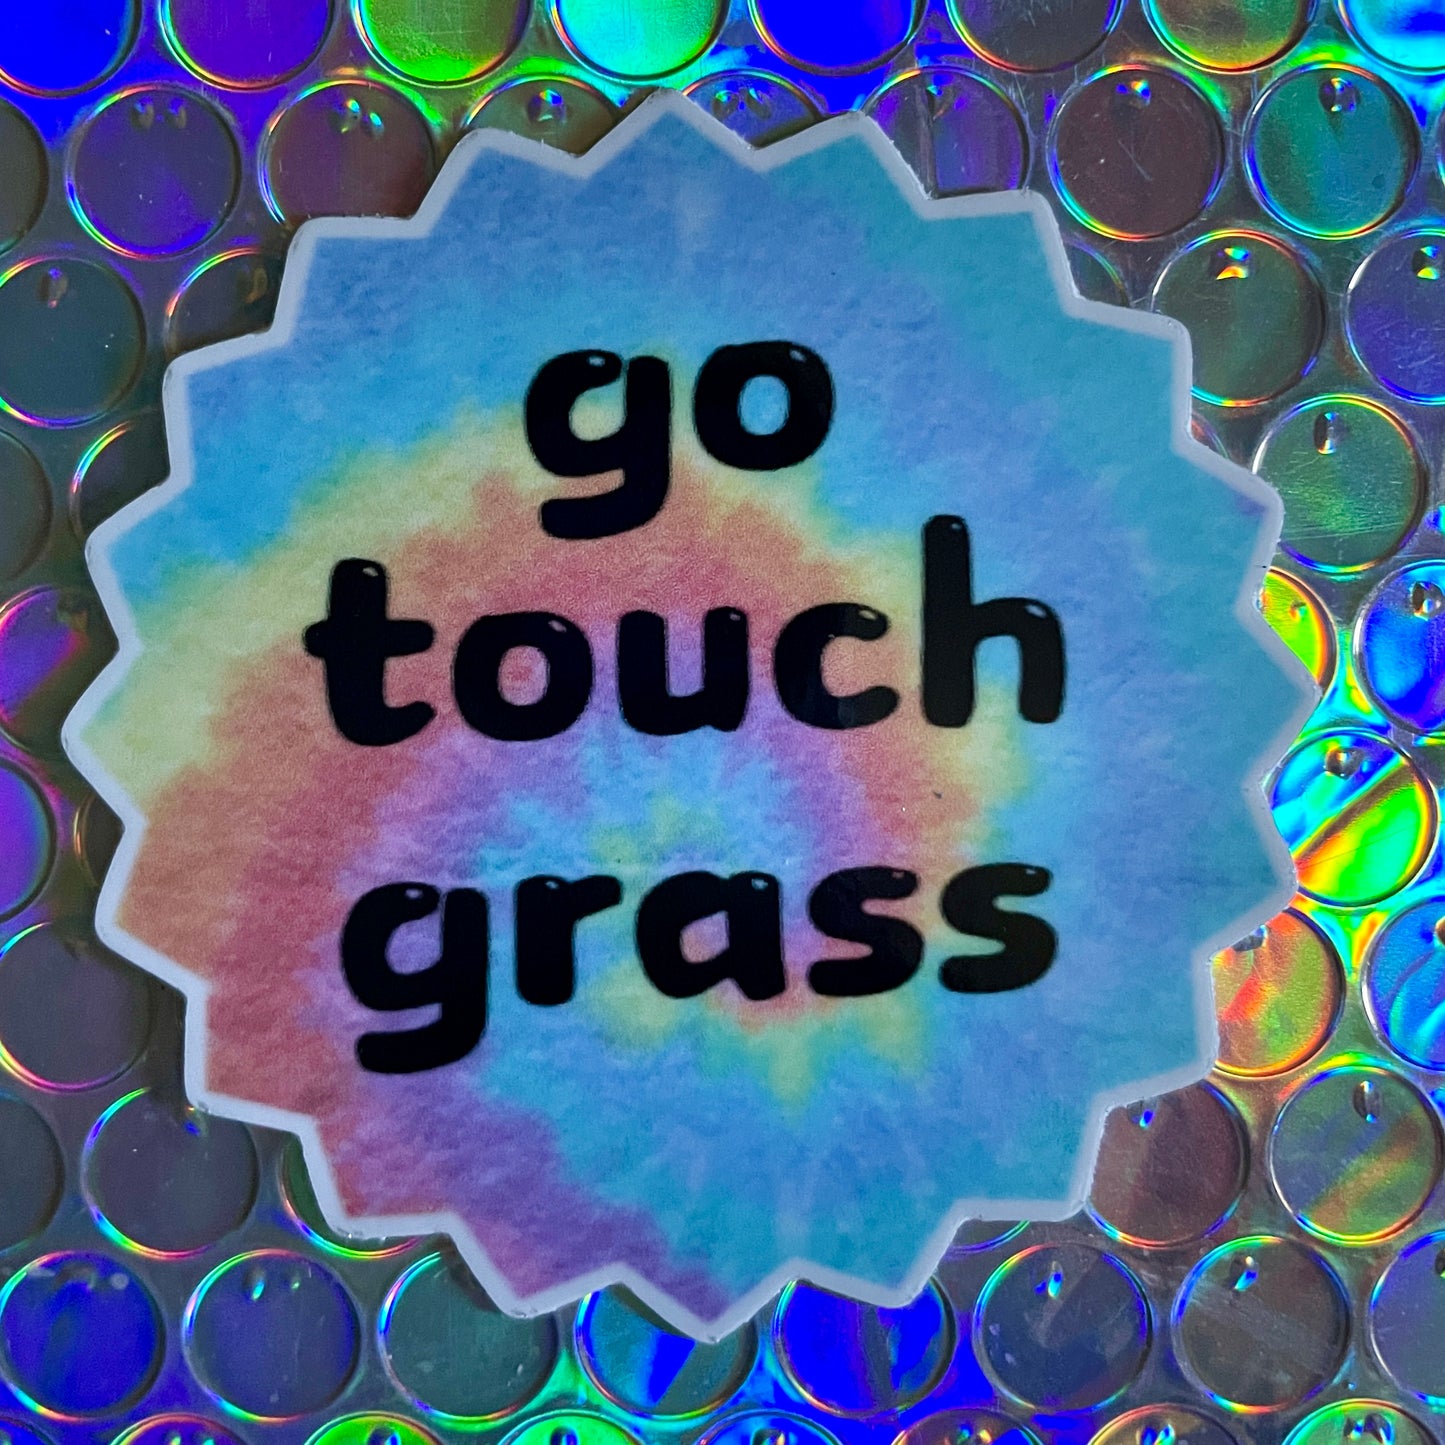 "Go Touch Grass" Sticker